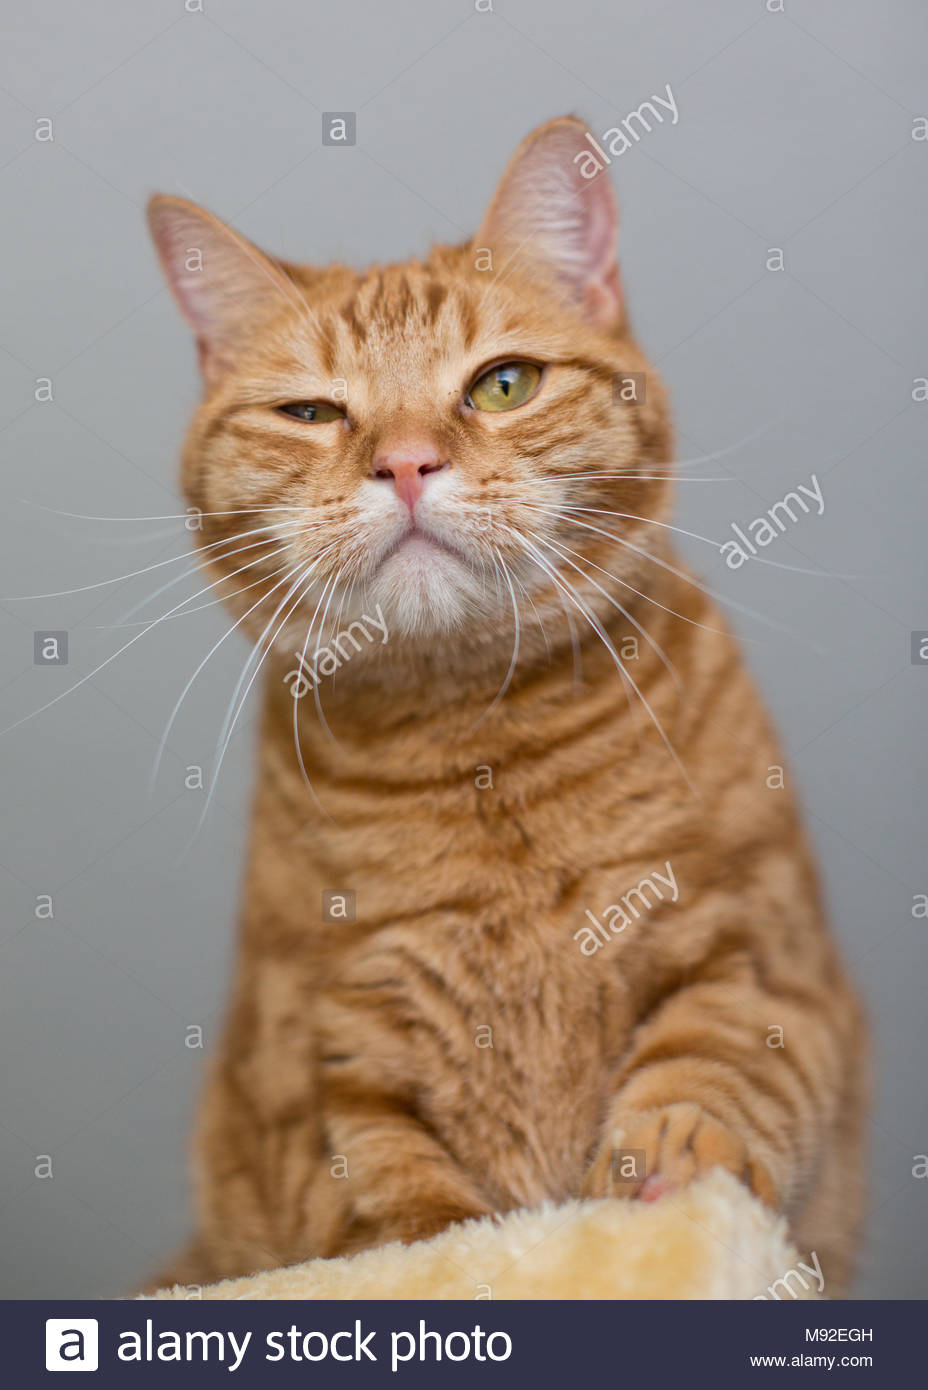 funny orange tabby cat tissue holder